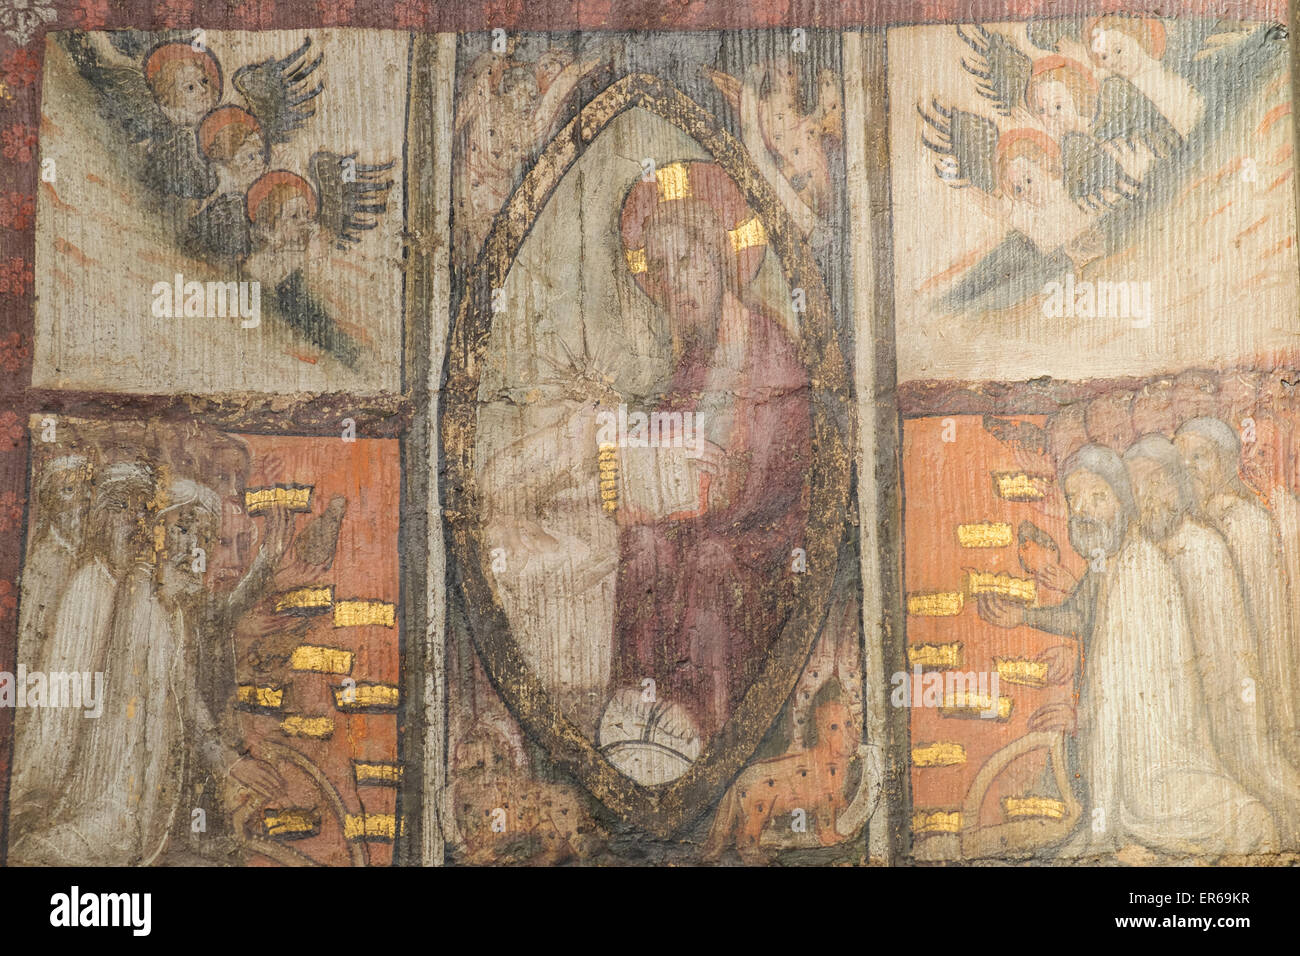 London, Westminster Abbey, der Kapitelsaal, Wandmalereien aus dem 1400 zeigt Szenen aus dem Buch der Offenbarung Stockfoto